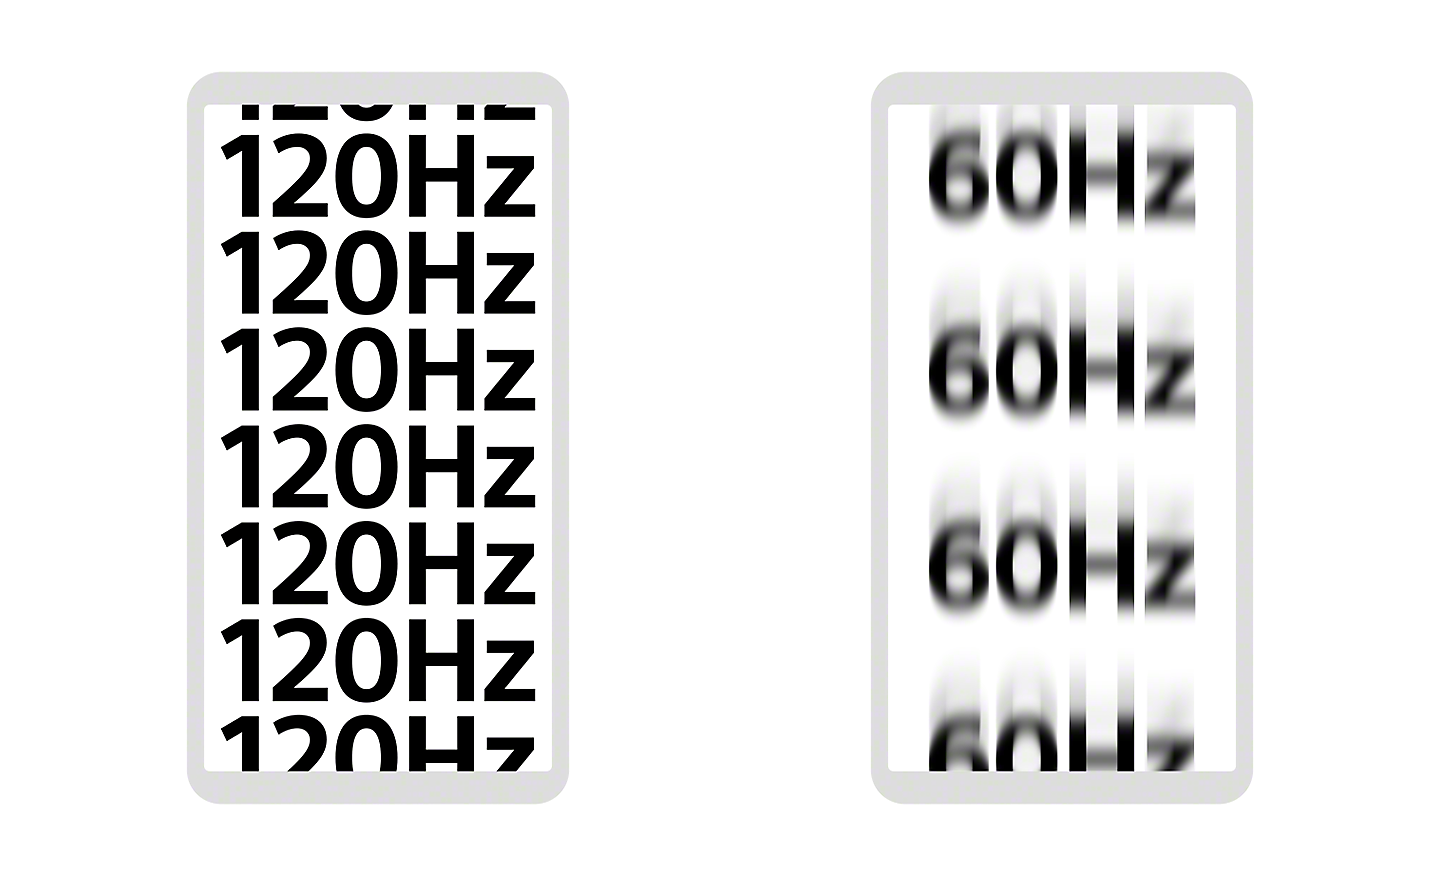 Illustrazione dei display di due smartphone, uno mostra 120 Hz con perfetta nitidezza, l'altro mostra 60 Hz leggermente sfocato